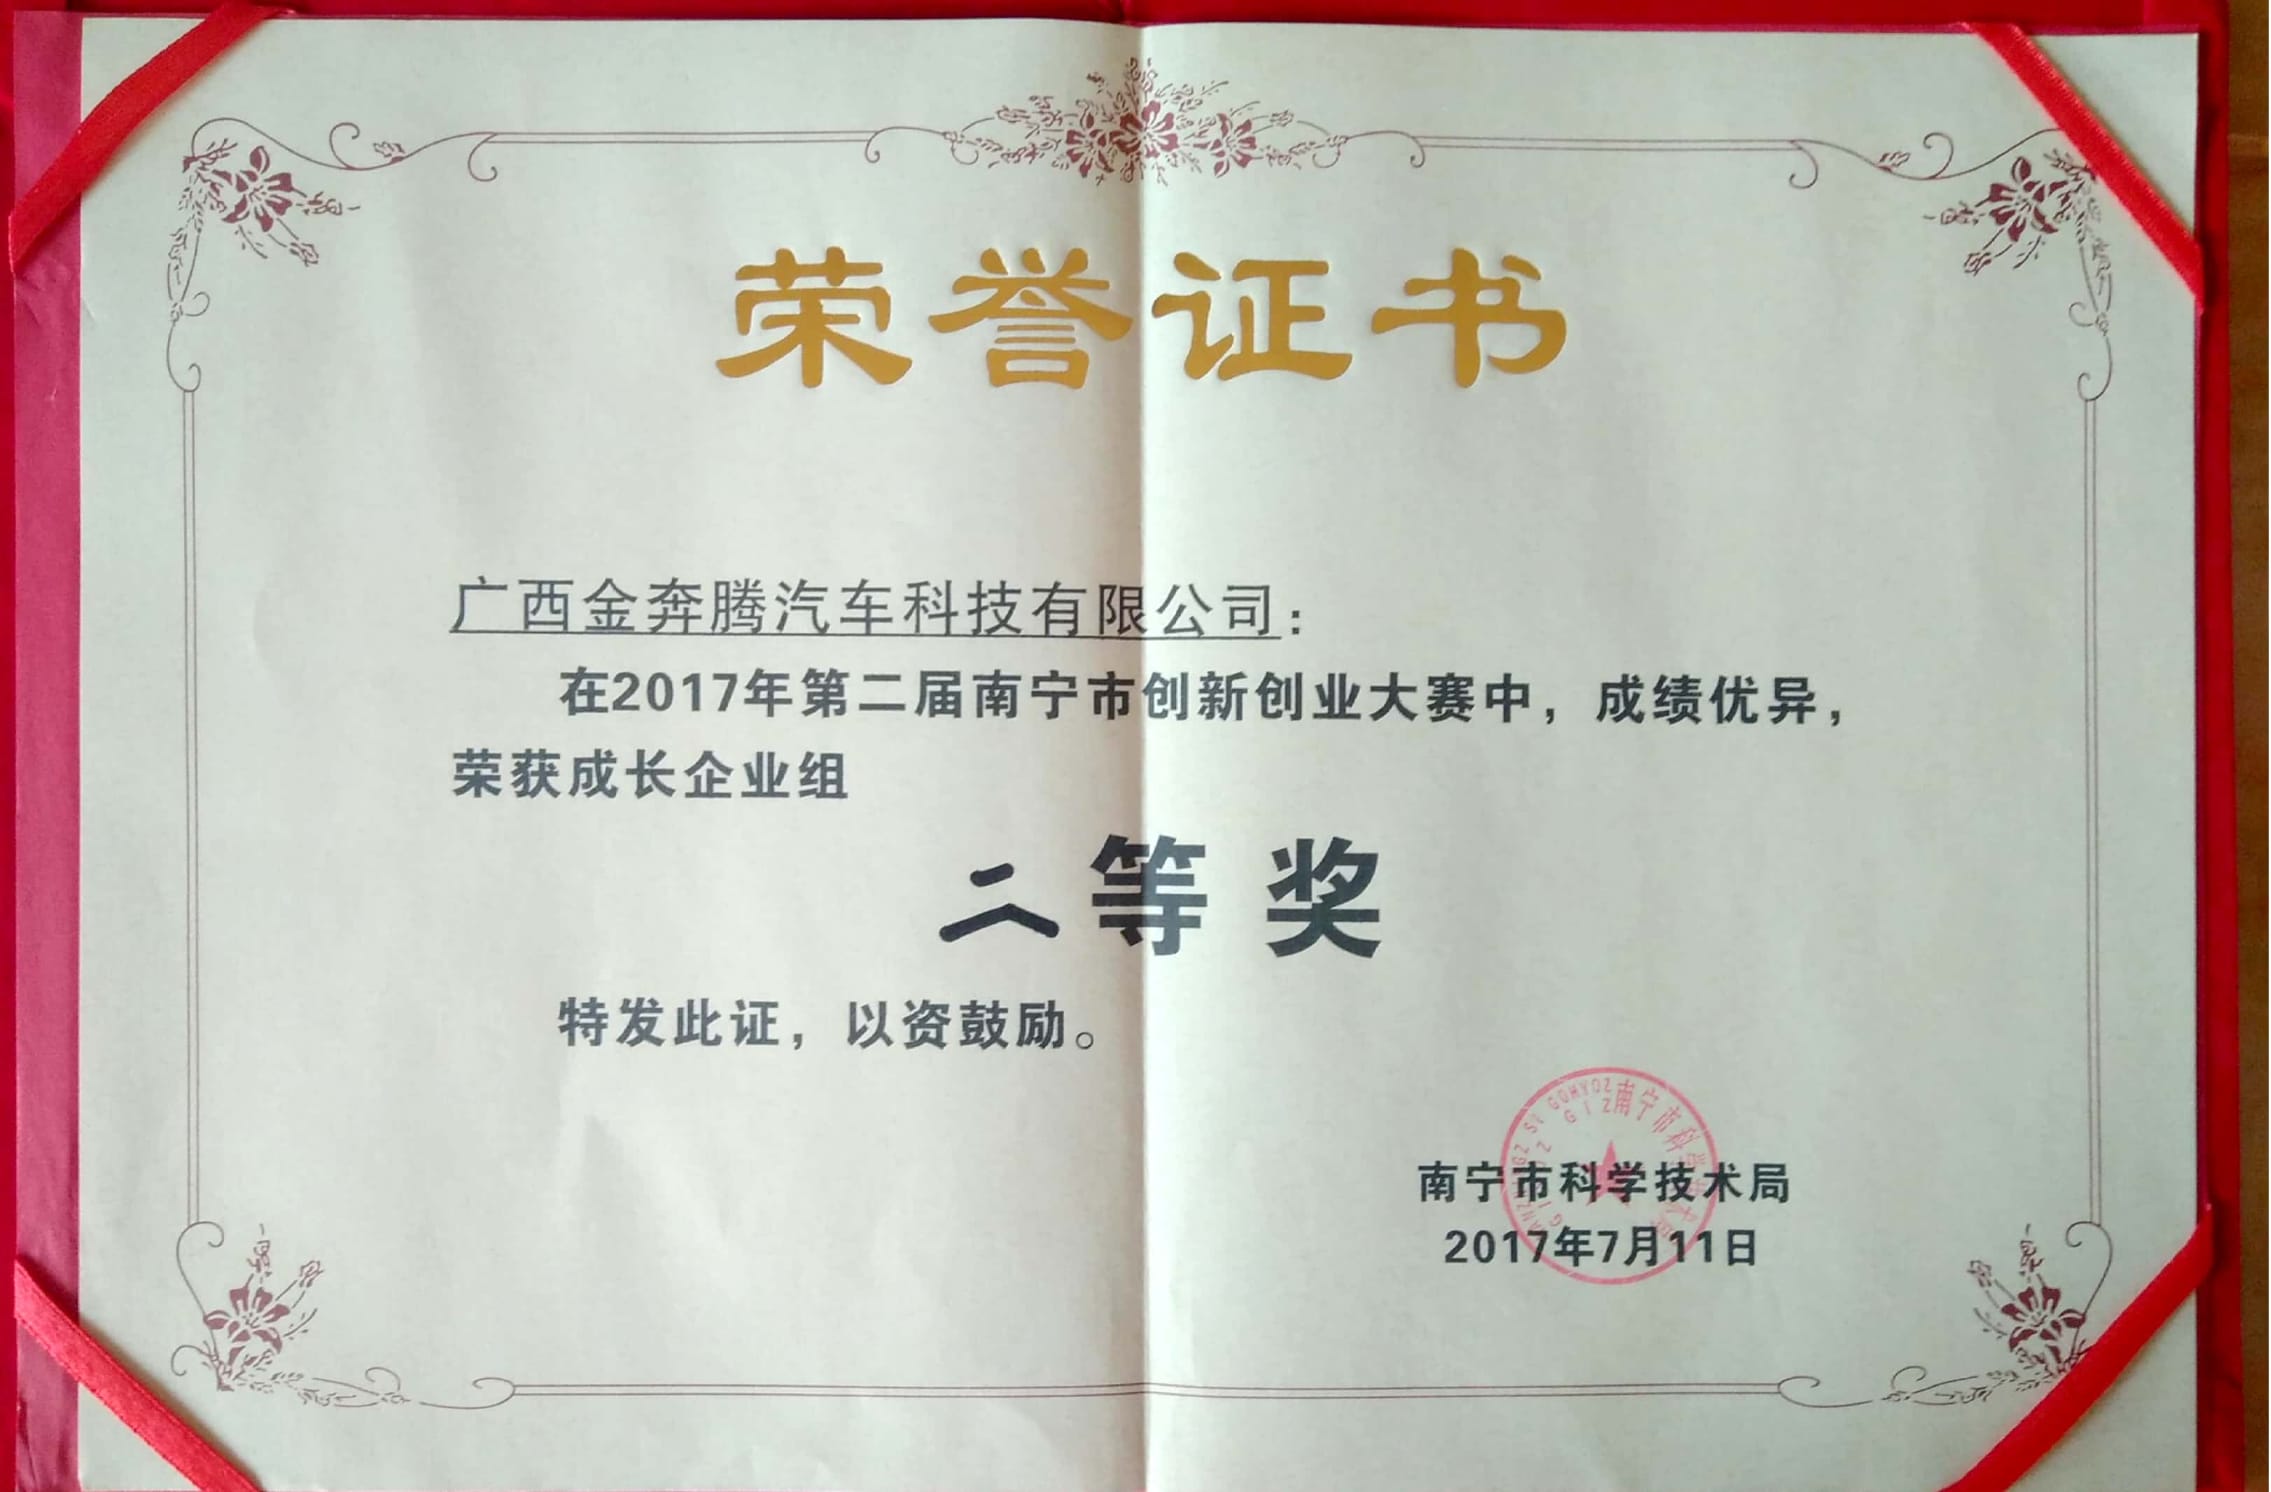 荣获第二届南宁创新创业大赛成长组二等奖.jpg